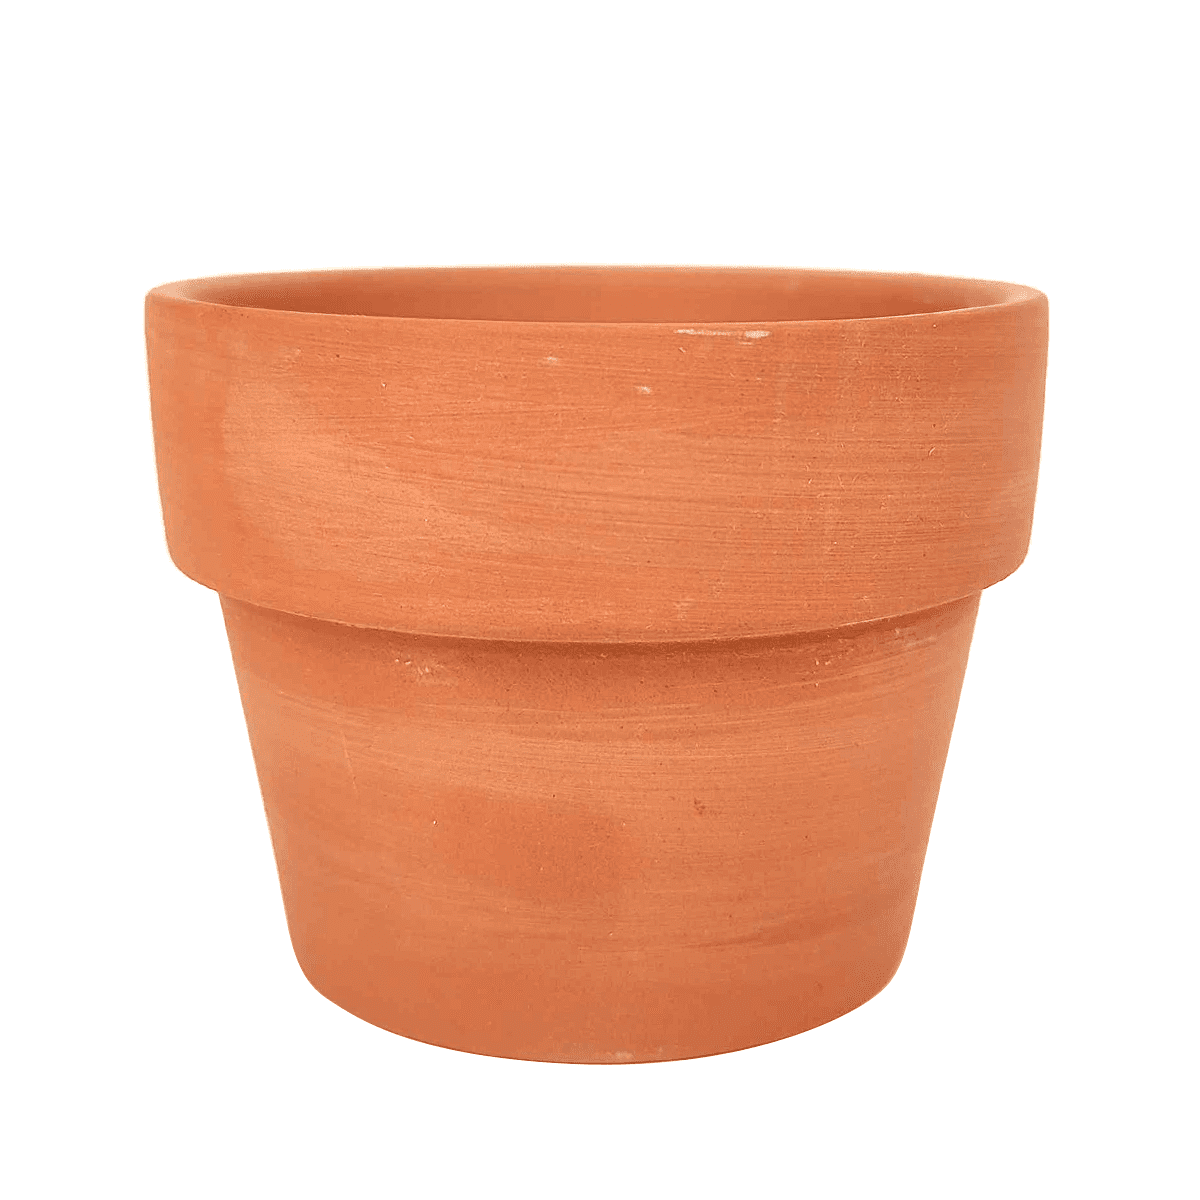 Specificiteit ethiek verkouden worden 3.5 Inch Terracotta Pot, Clay Pot for Succulents - Walmart.com